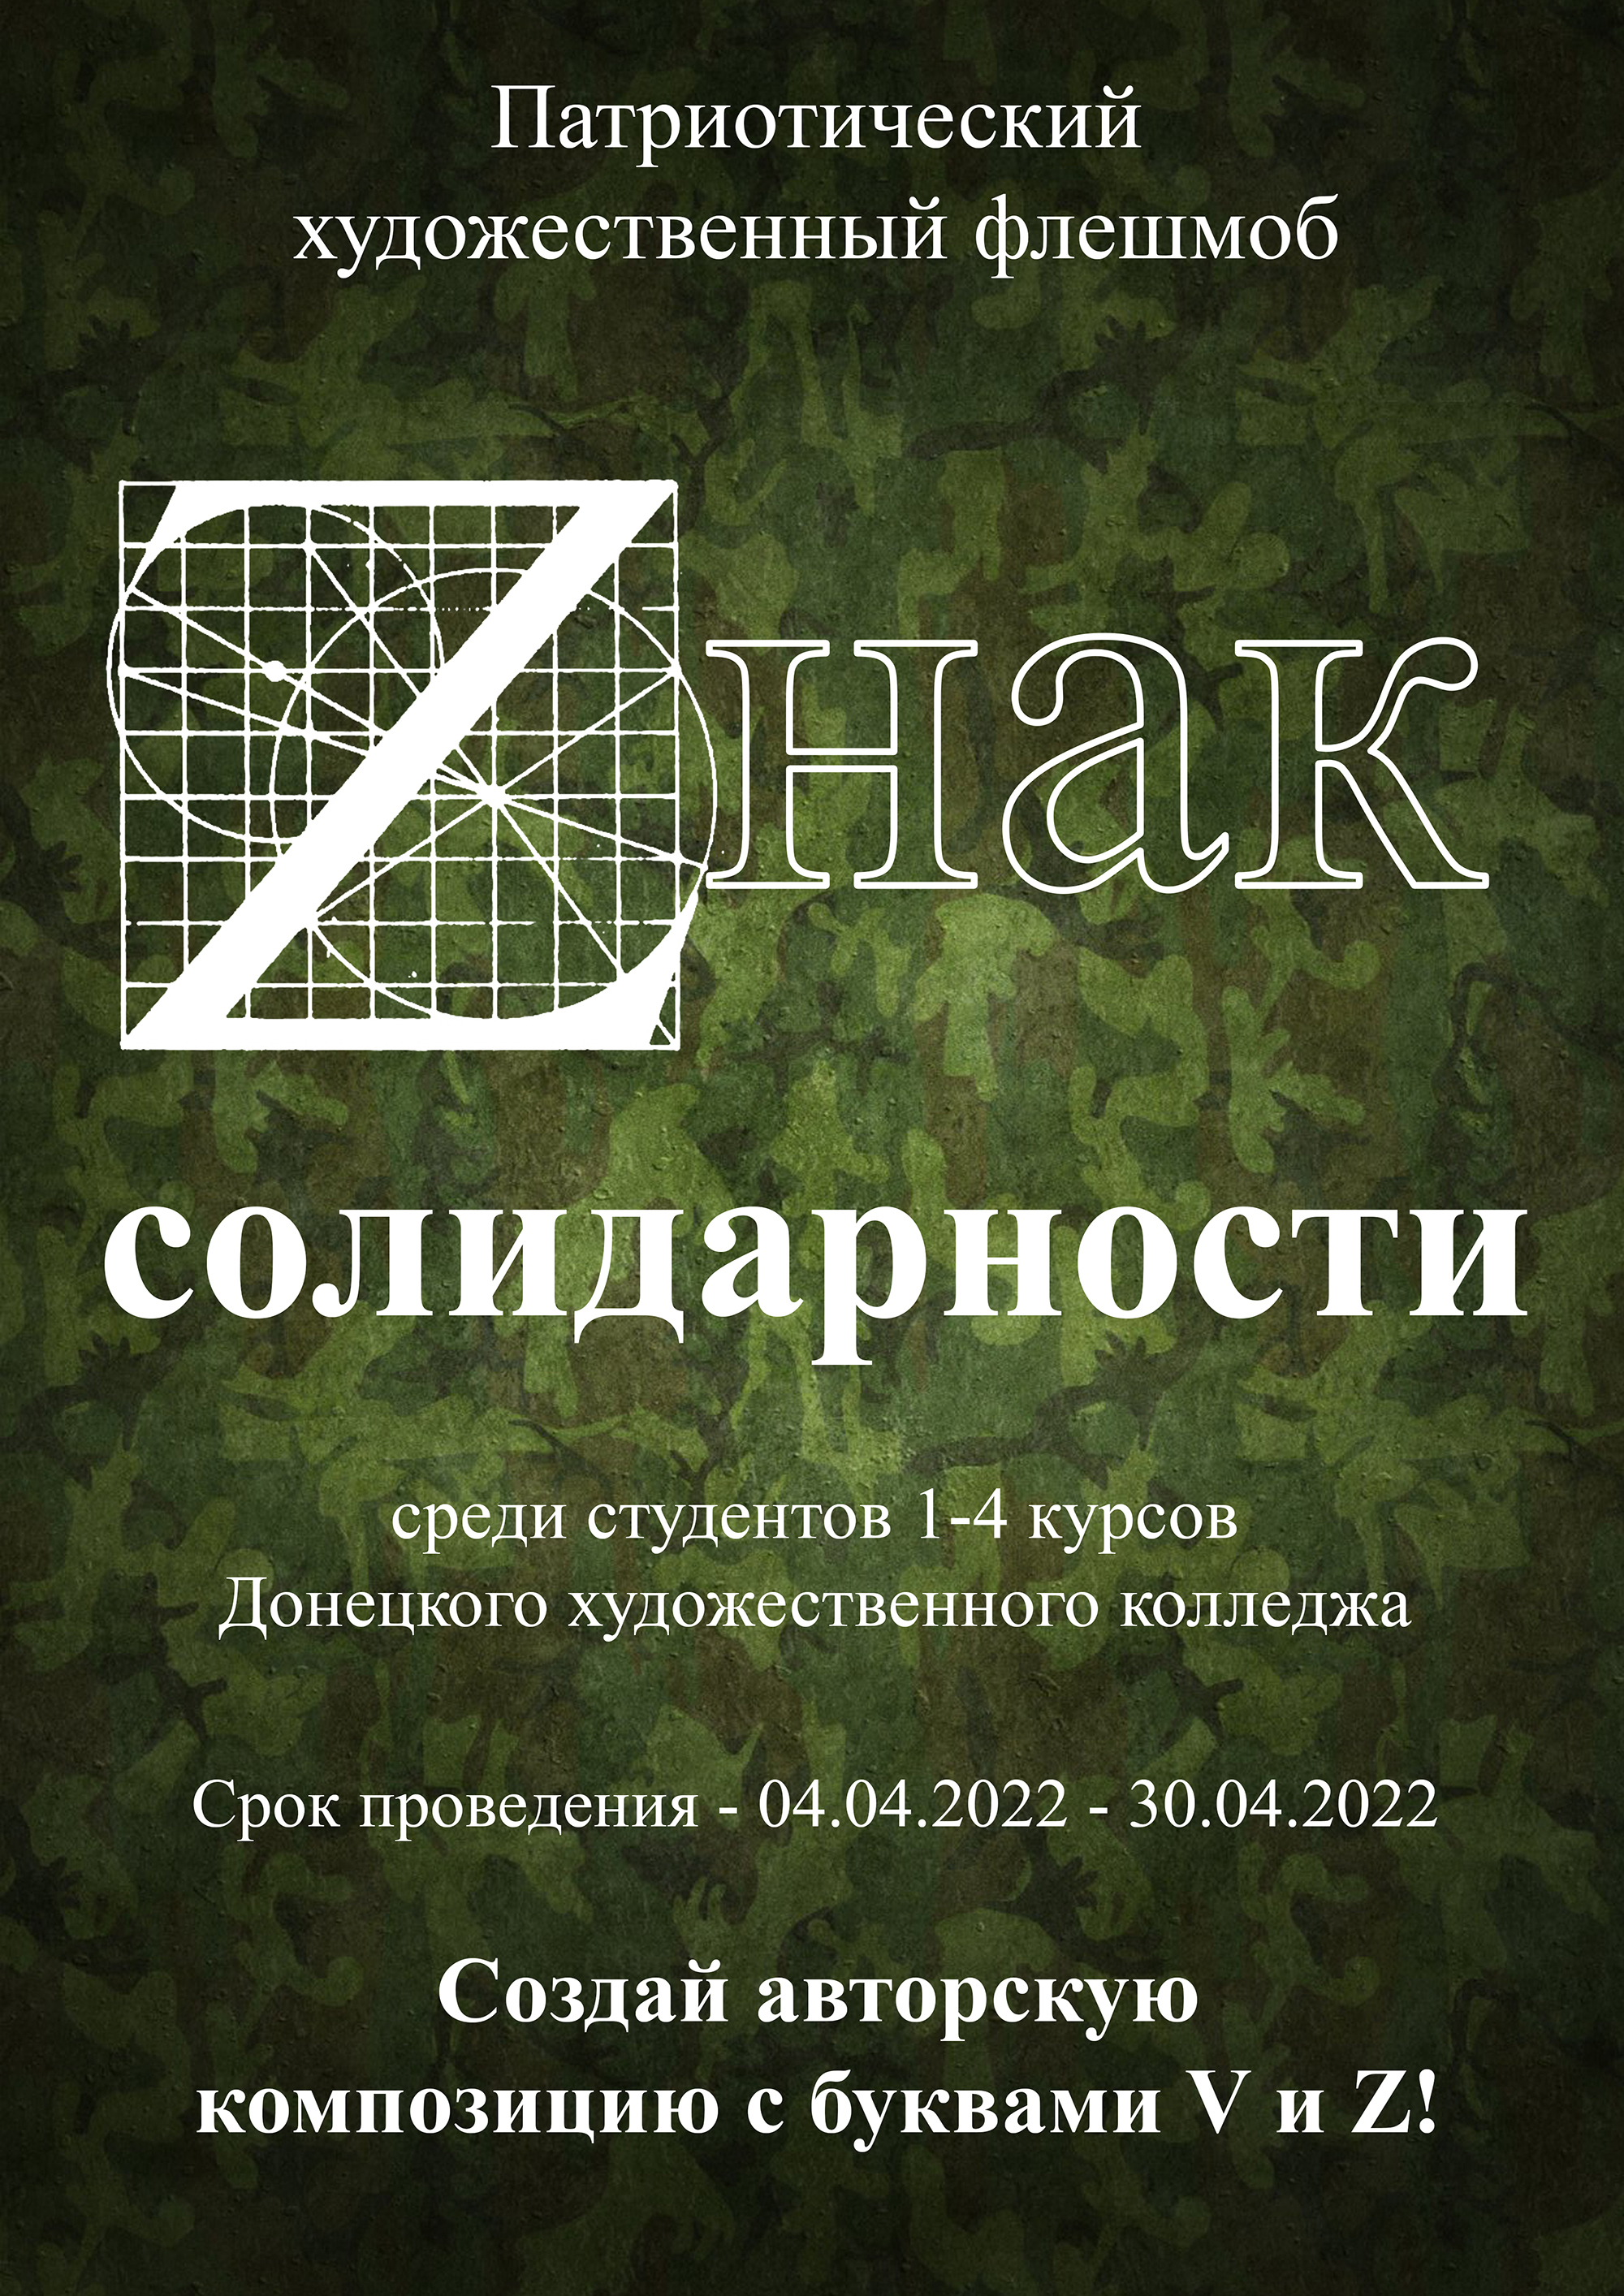 Донецкий художественный колледж начинает патриотический художественный флешмоб «Zнак солидарности»